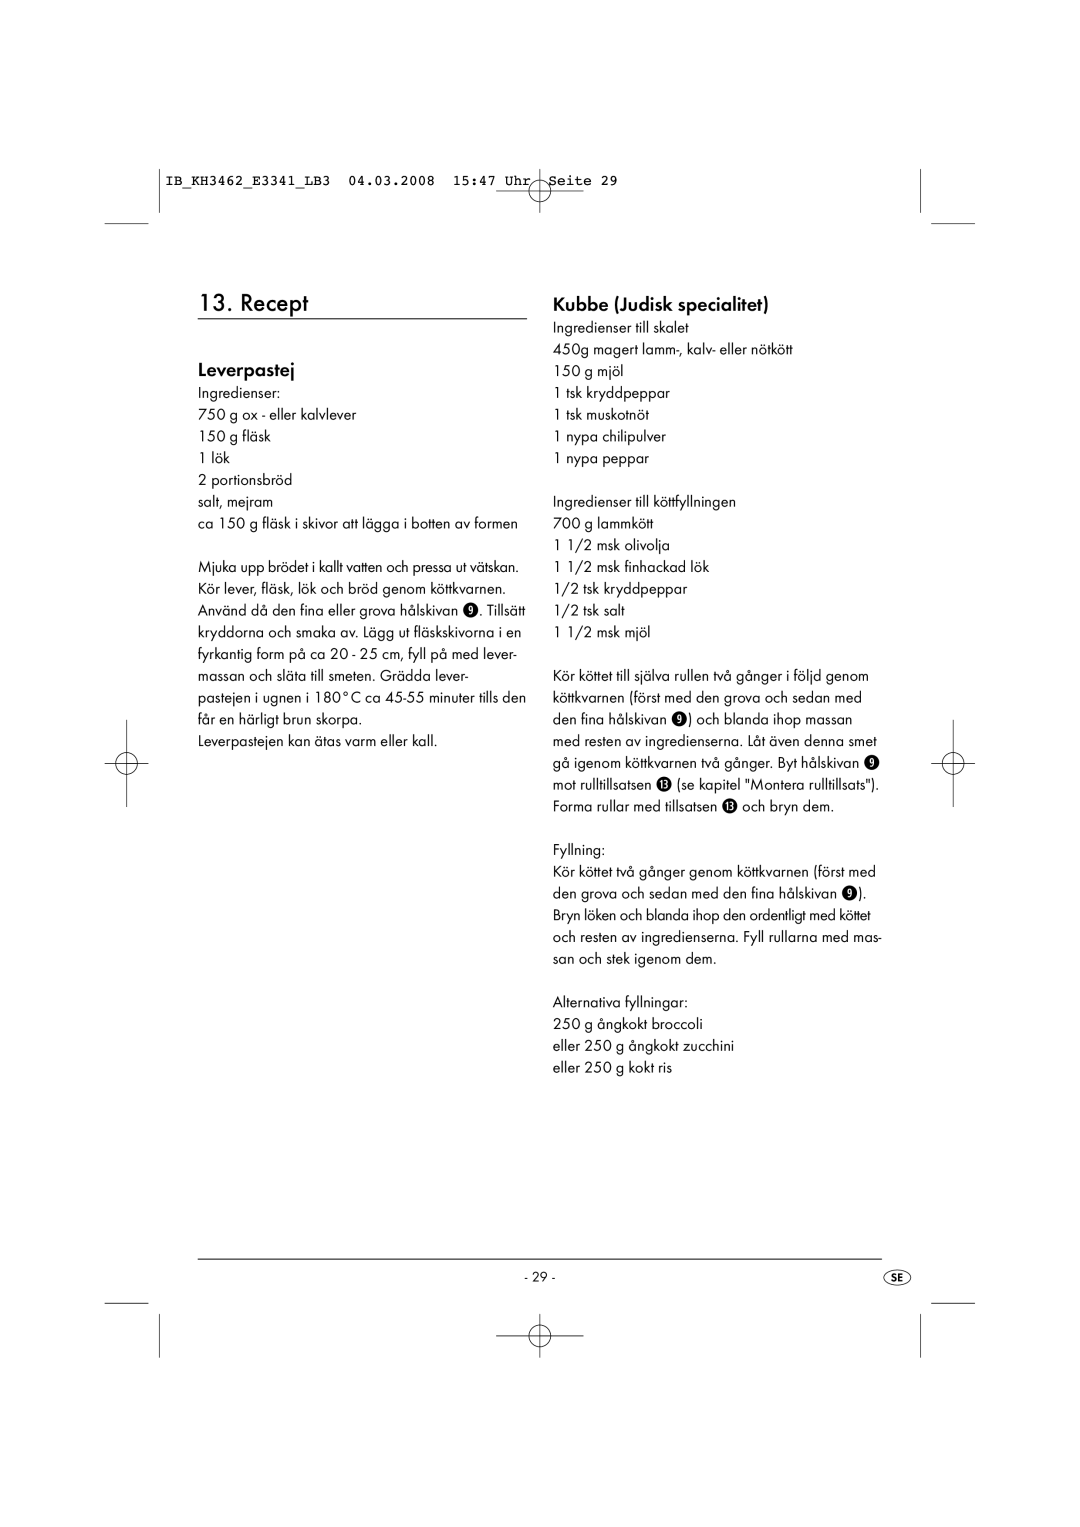 Kompernass KH3462-02/08-V1 manual Recept, Leverpastej, Kubbe Judisk specialitet 